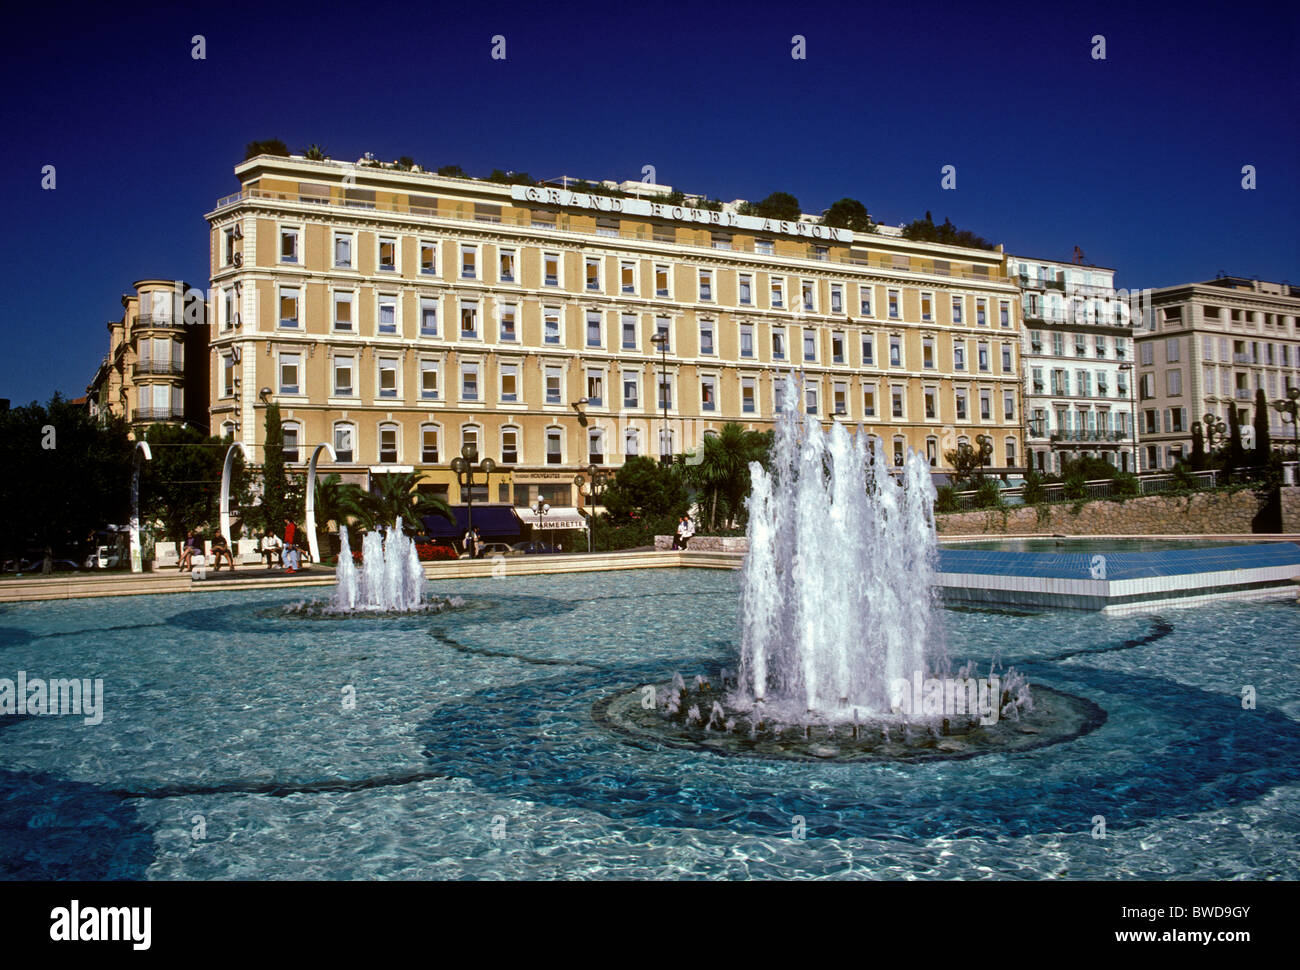 Fontaine, place Masséna, Grand Hôtel Aston, en arrière-plan, la ville de Nice, Nice, French Riviera, Cote d'Azur, France, Europe Banque D'Images